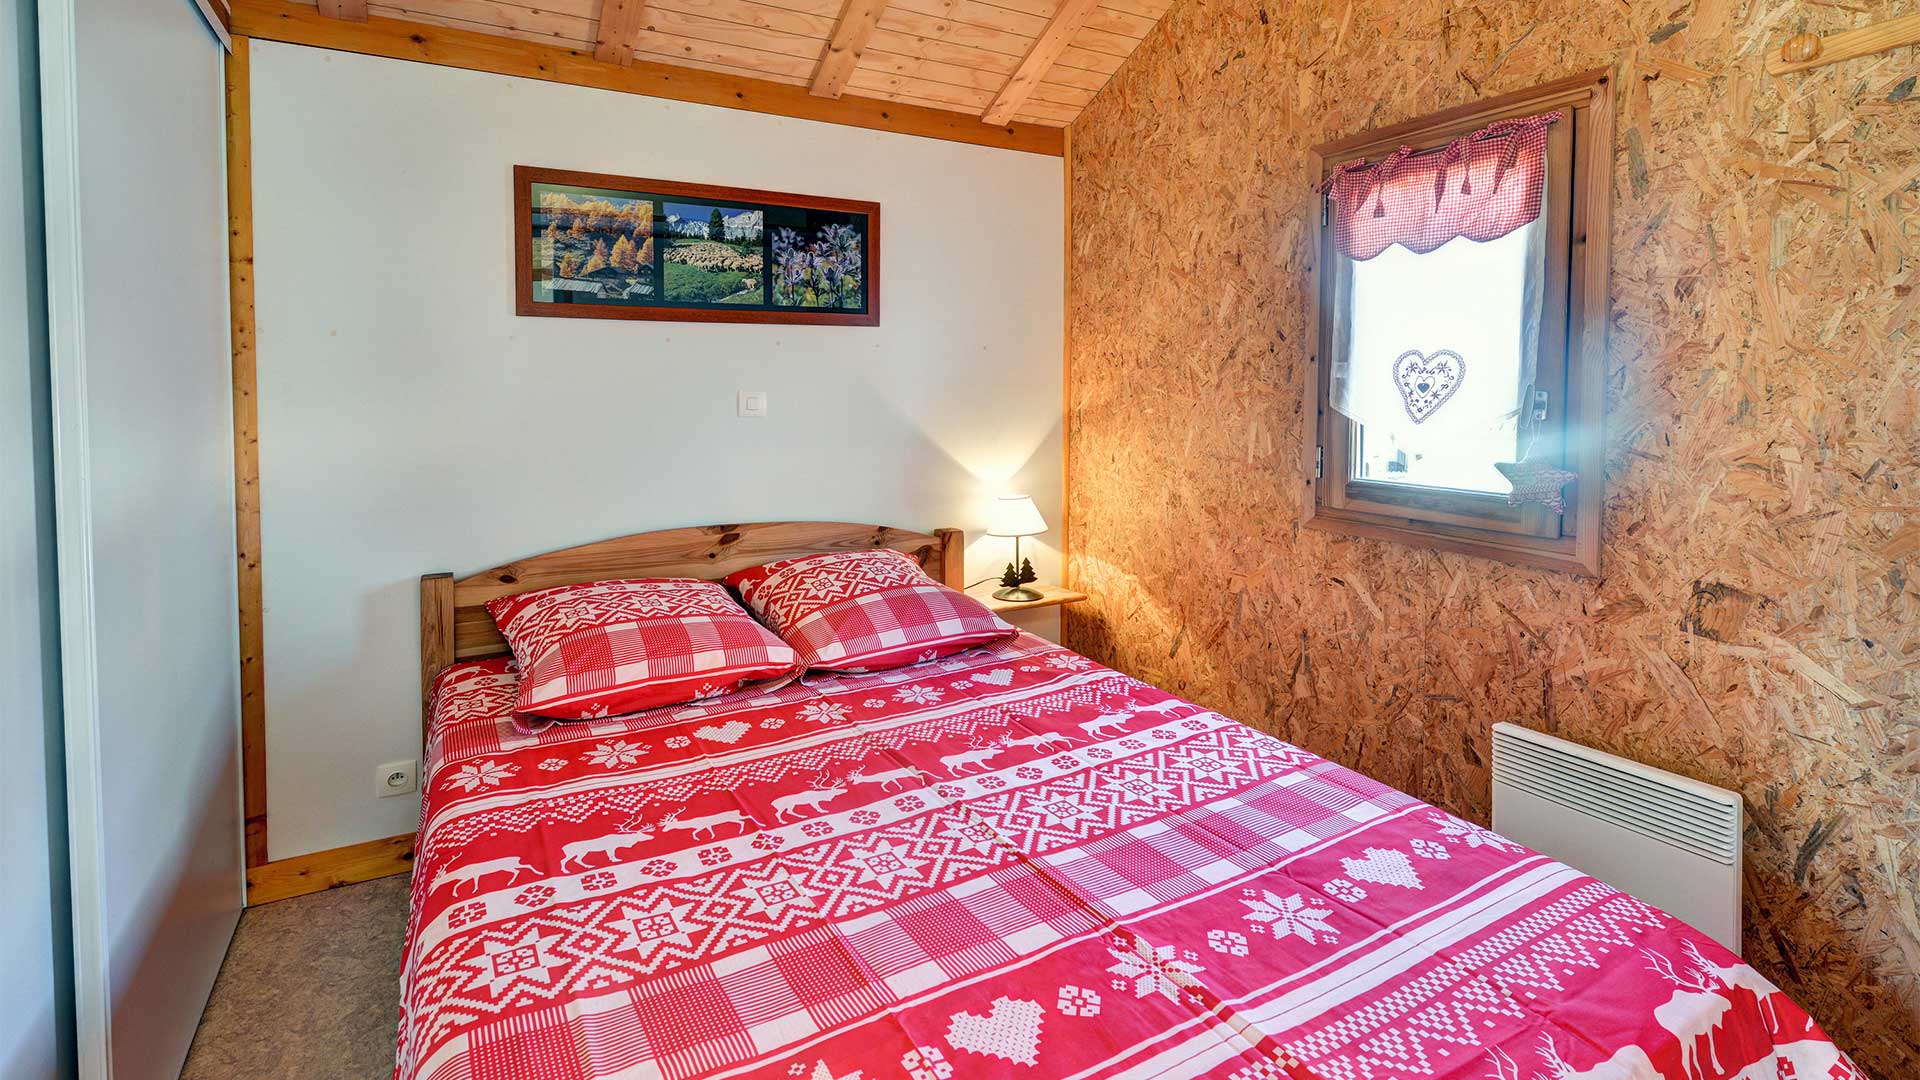 Grand Serre - Grande Gargouille : Chambre avec lit double - Chalet 5 personnes en location à Briançon